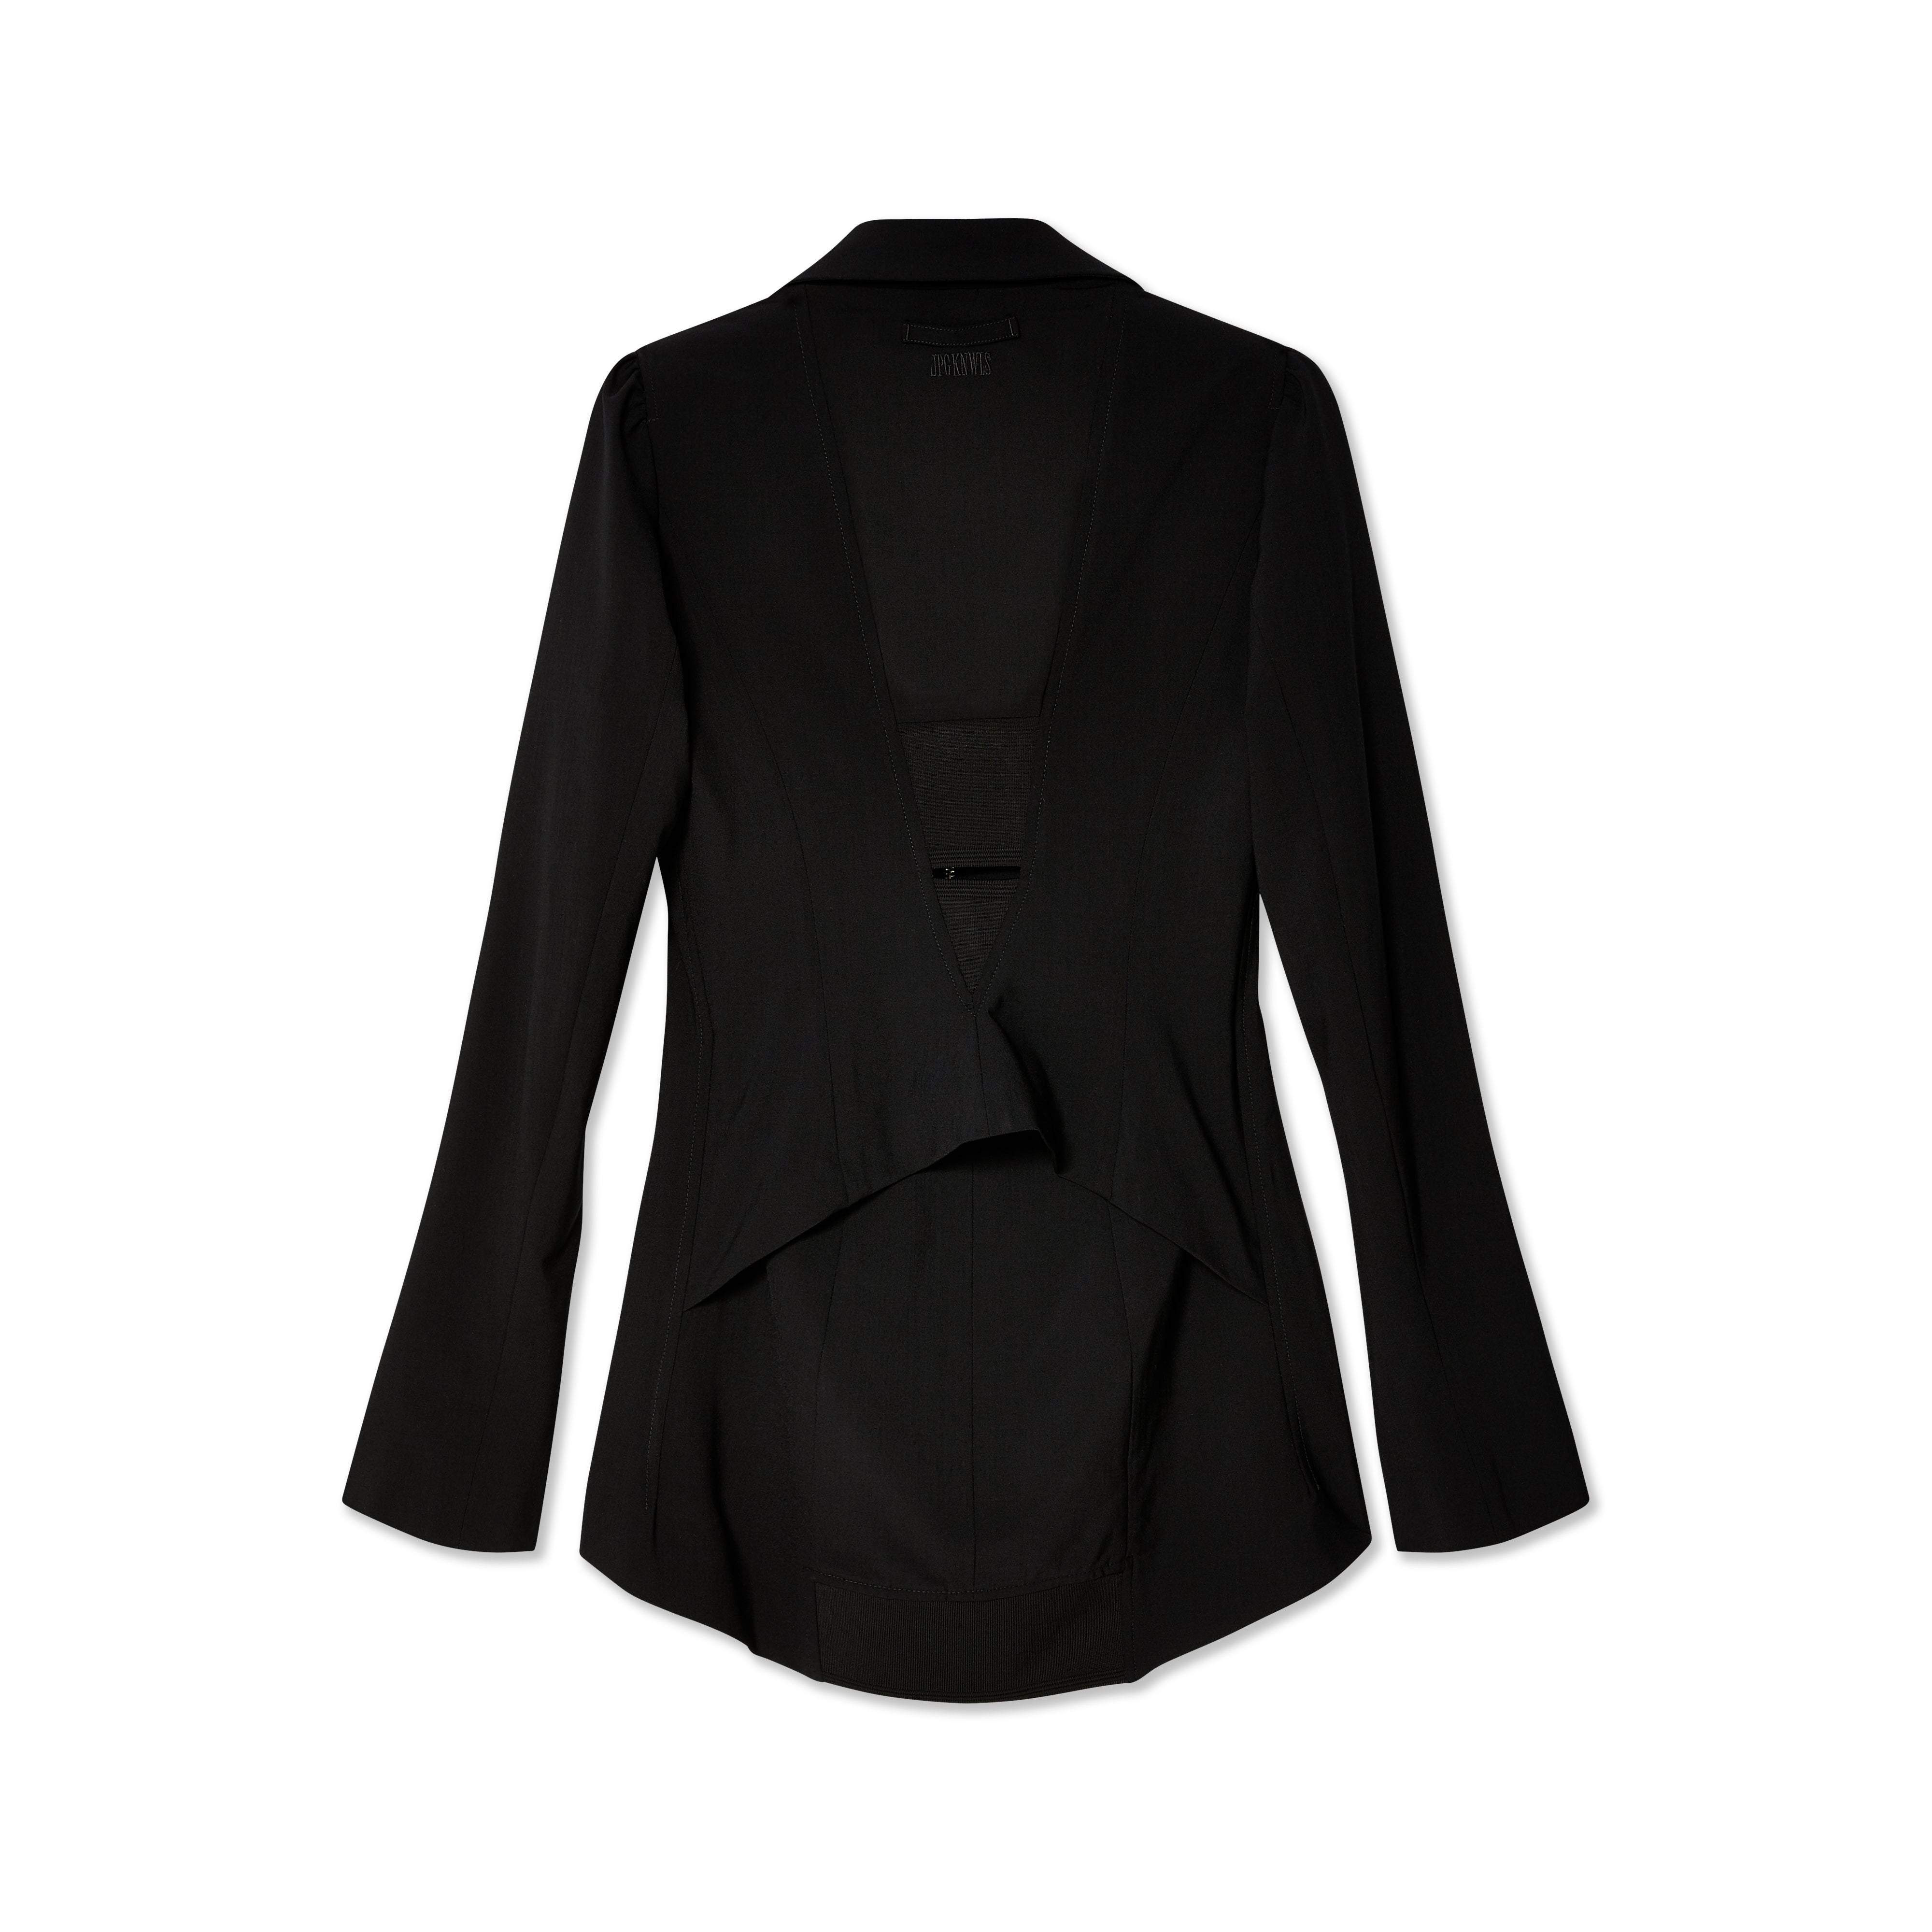 Jean Paul Gaultier - KNWLS Women's Fitted Suit Jacket - (Black)